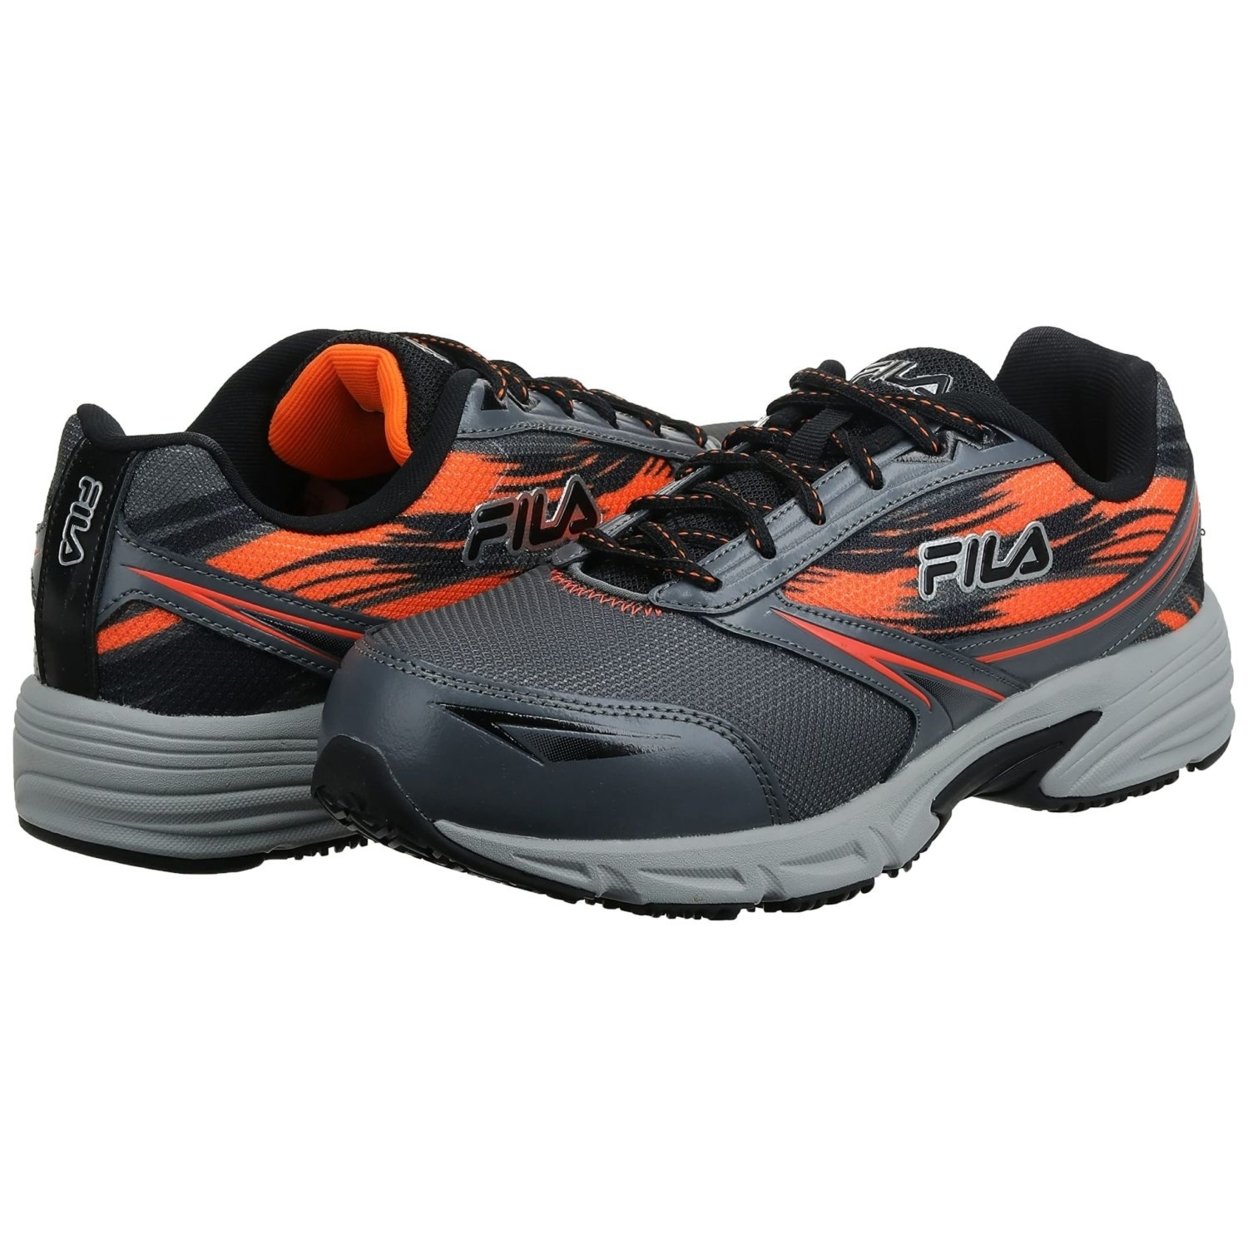 Fila Menâs Memory Meiera 2 Slip Resistant And Composite Toe Work Shoe CSRK/BLK/VORN - Castlerock/Black/Vibrant Orange, 11.5